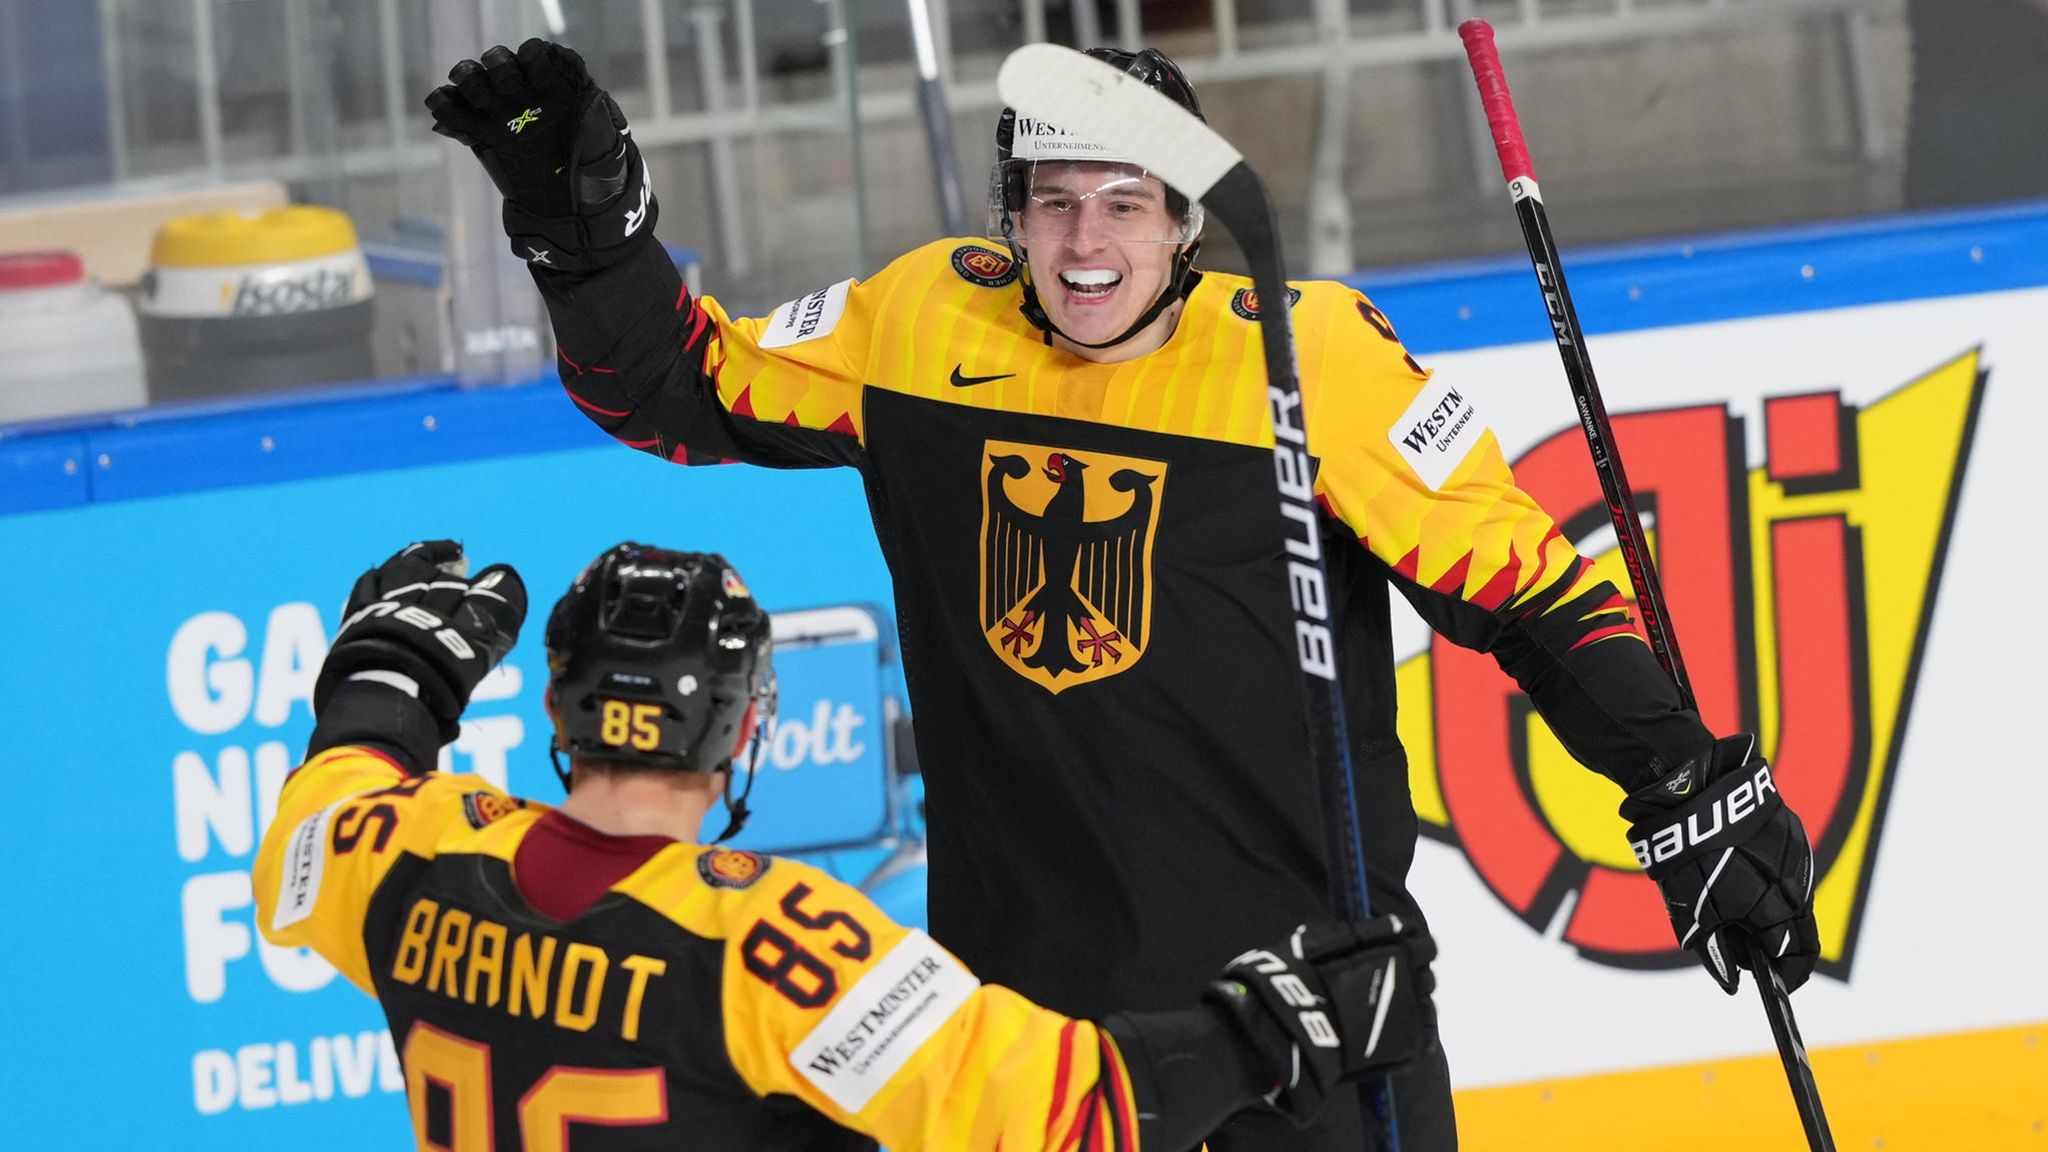 Deutsches Eishockey-Team schlägt auch Norwegen STERN.de